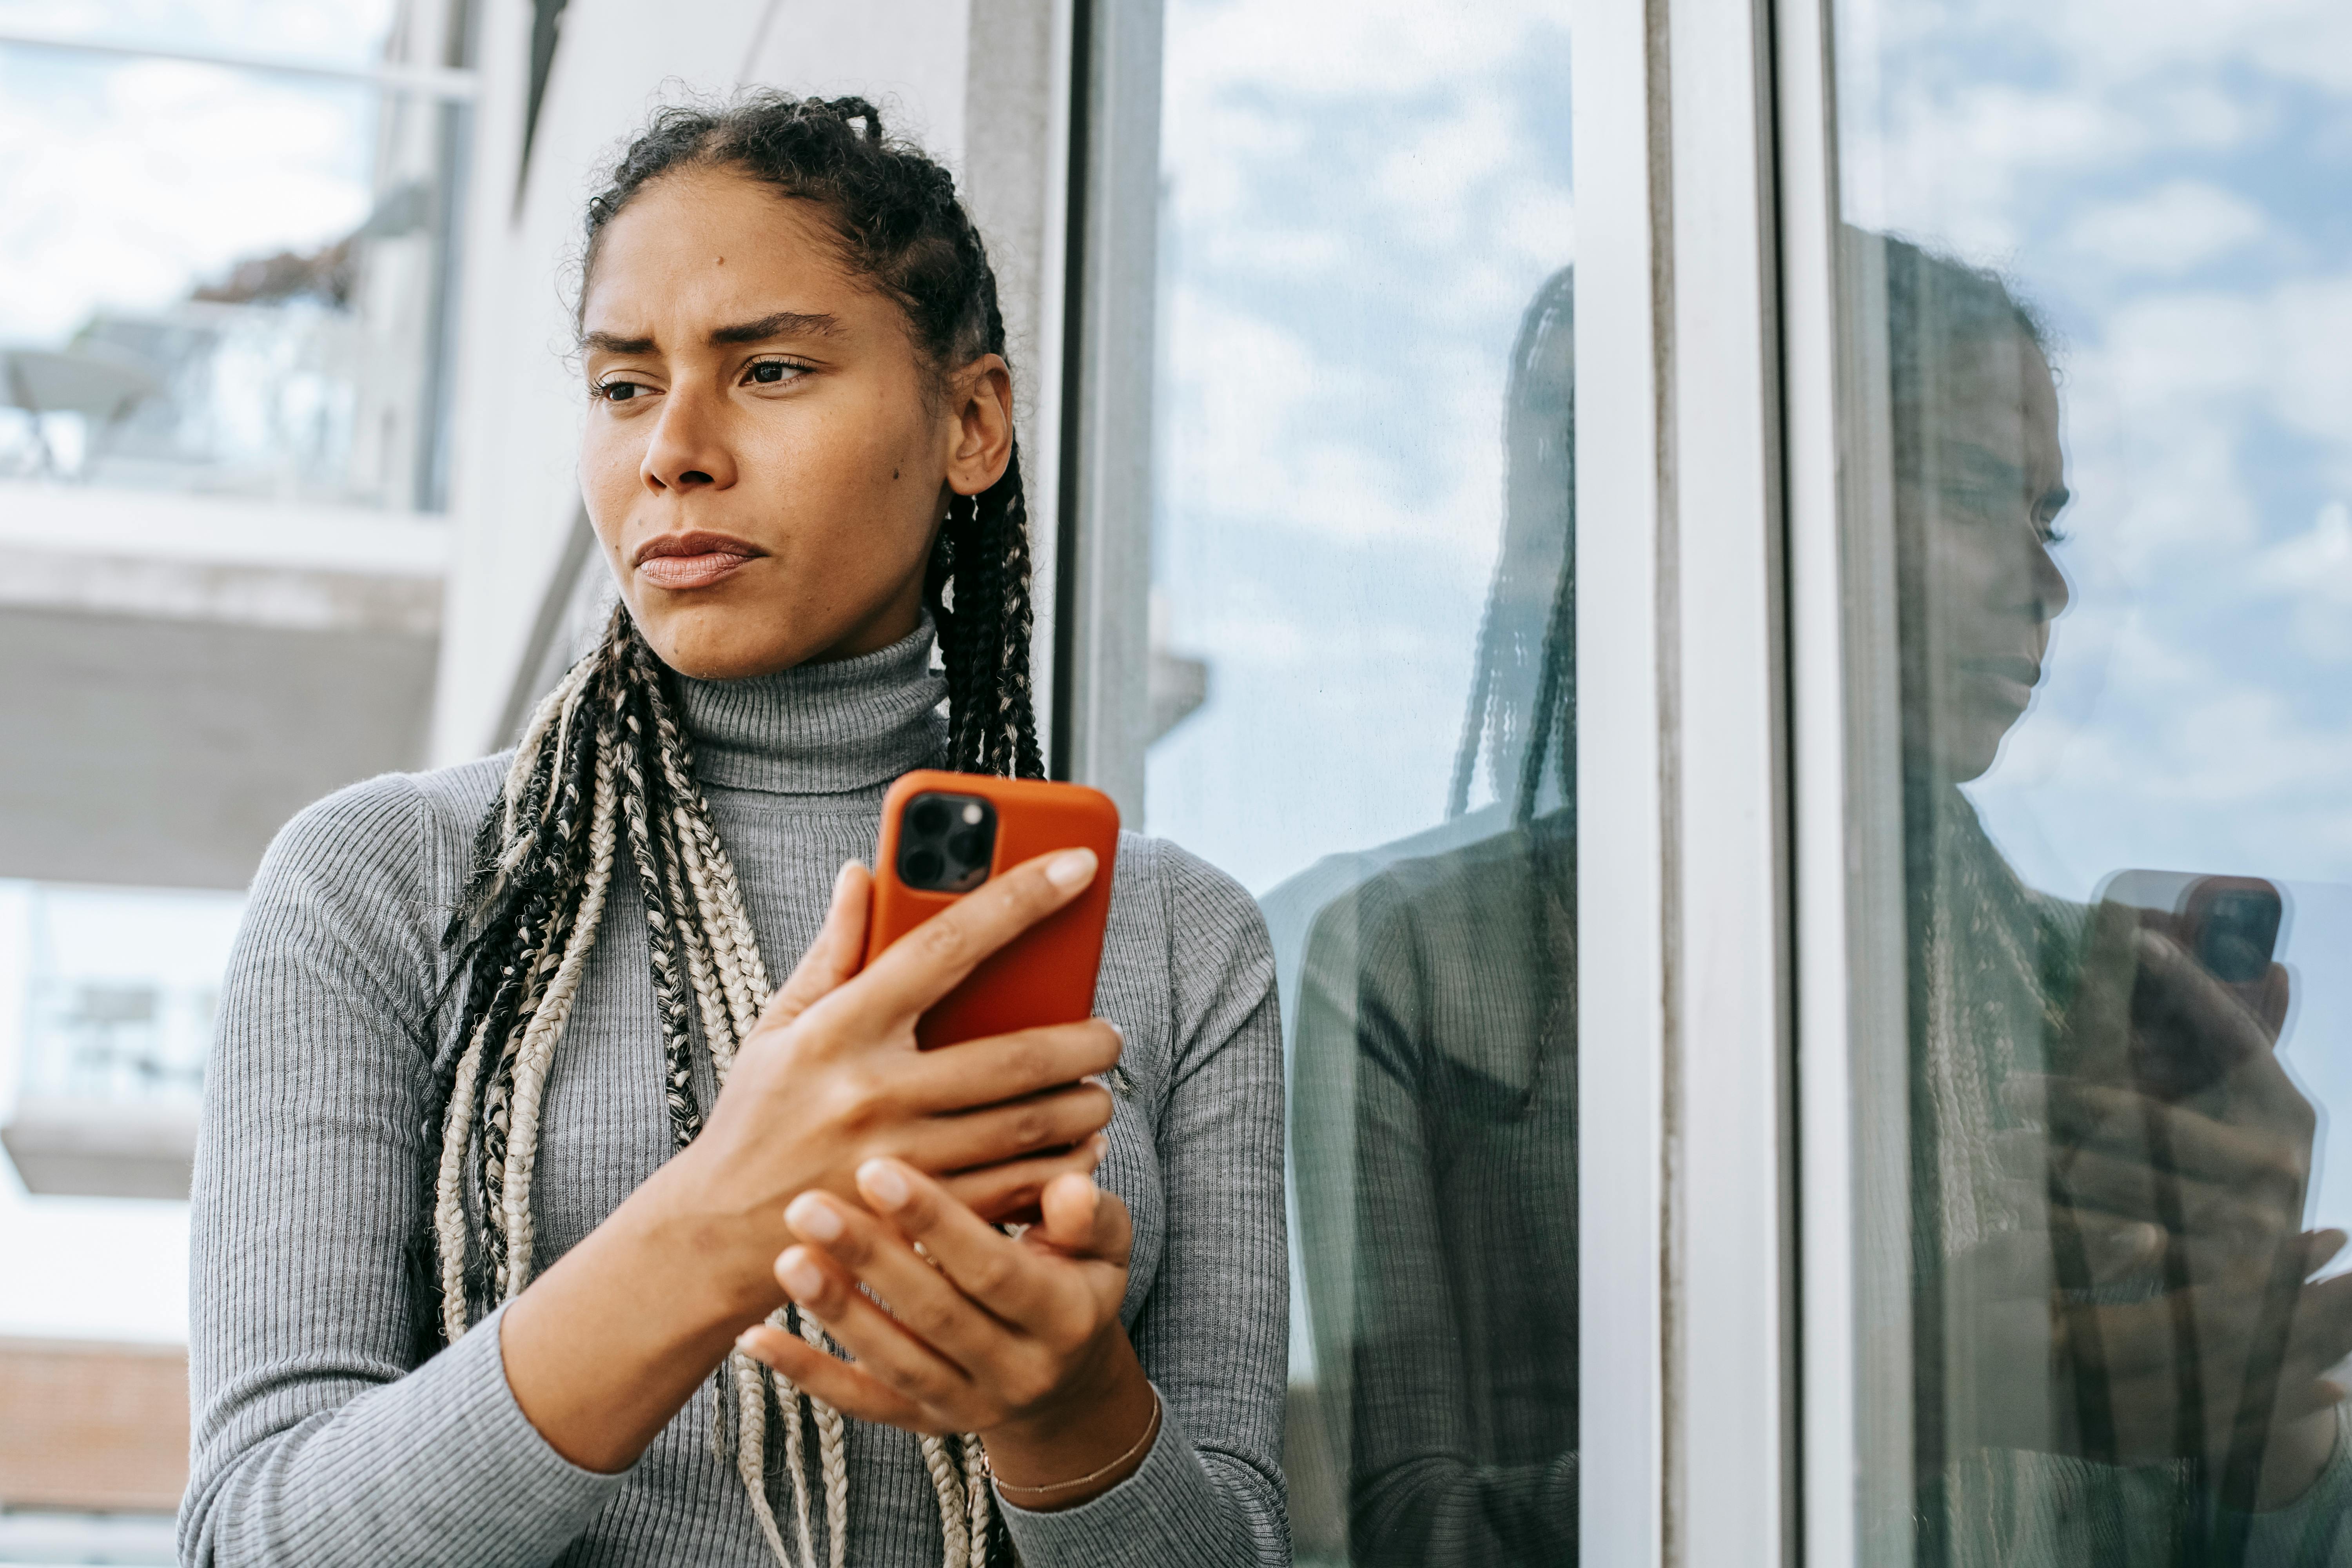 Eine Frau schaut zur Seite, während sie mit ihrem Handy in der Hand über etwas nachdenkt | Quelle: Pexels